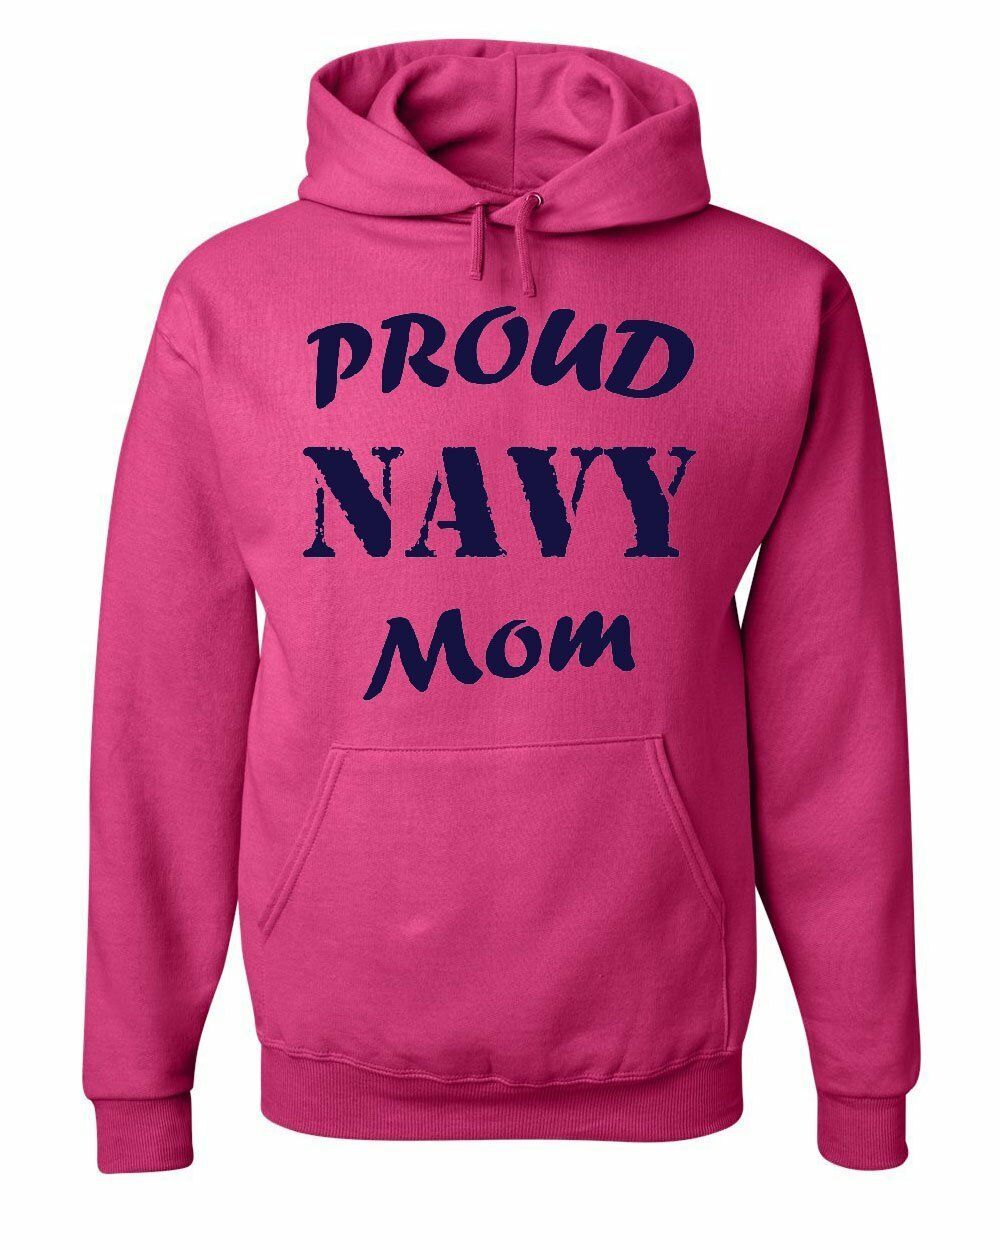 Proud Navy Mom Hoodie Patriotic Veteran Navy Seal Mother's Day ...